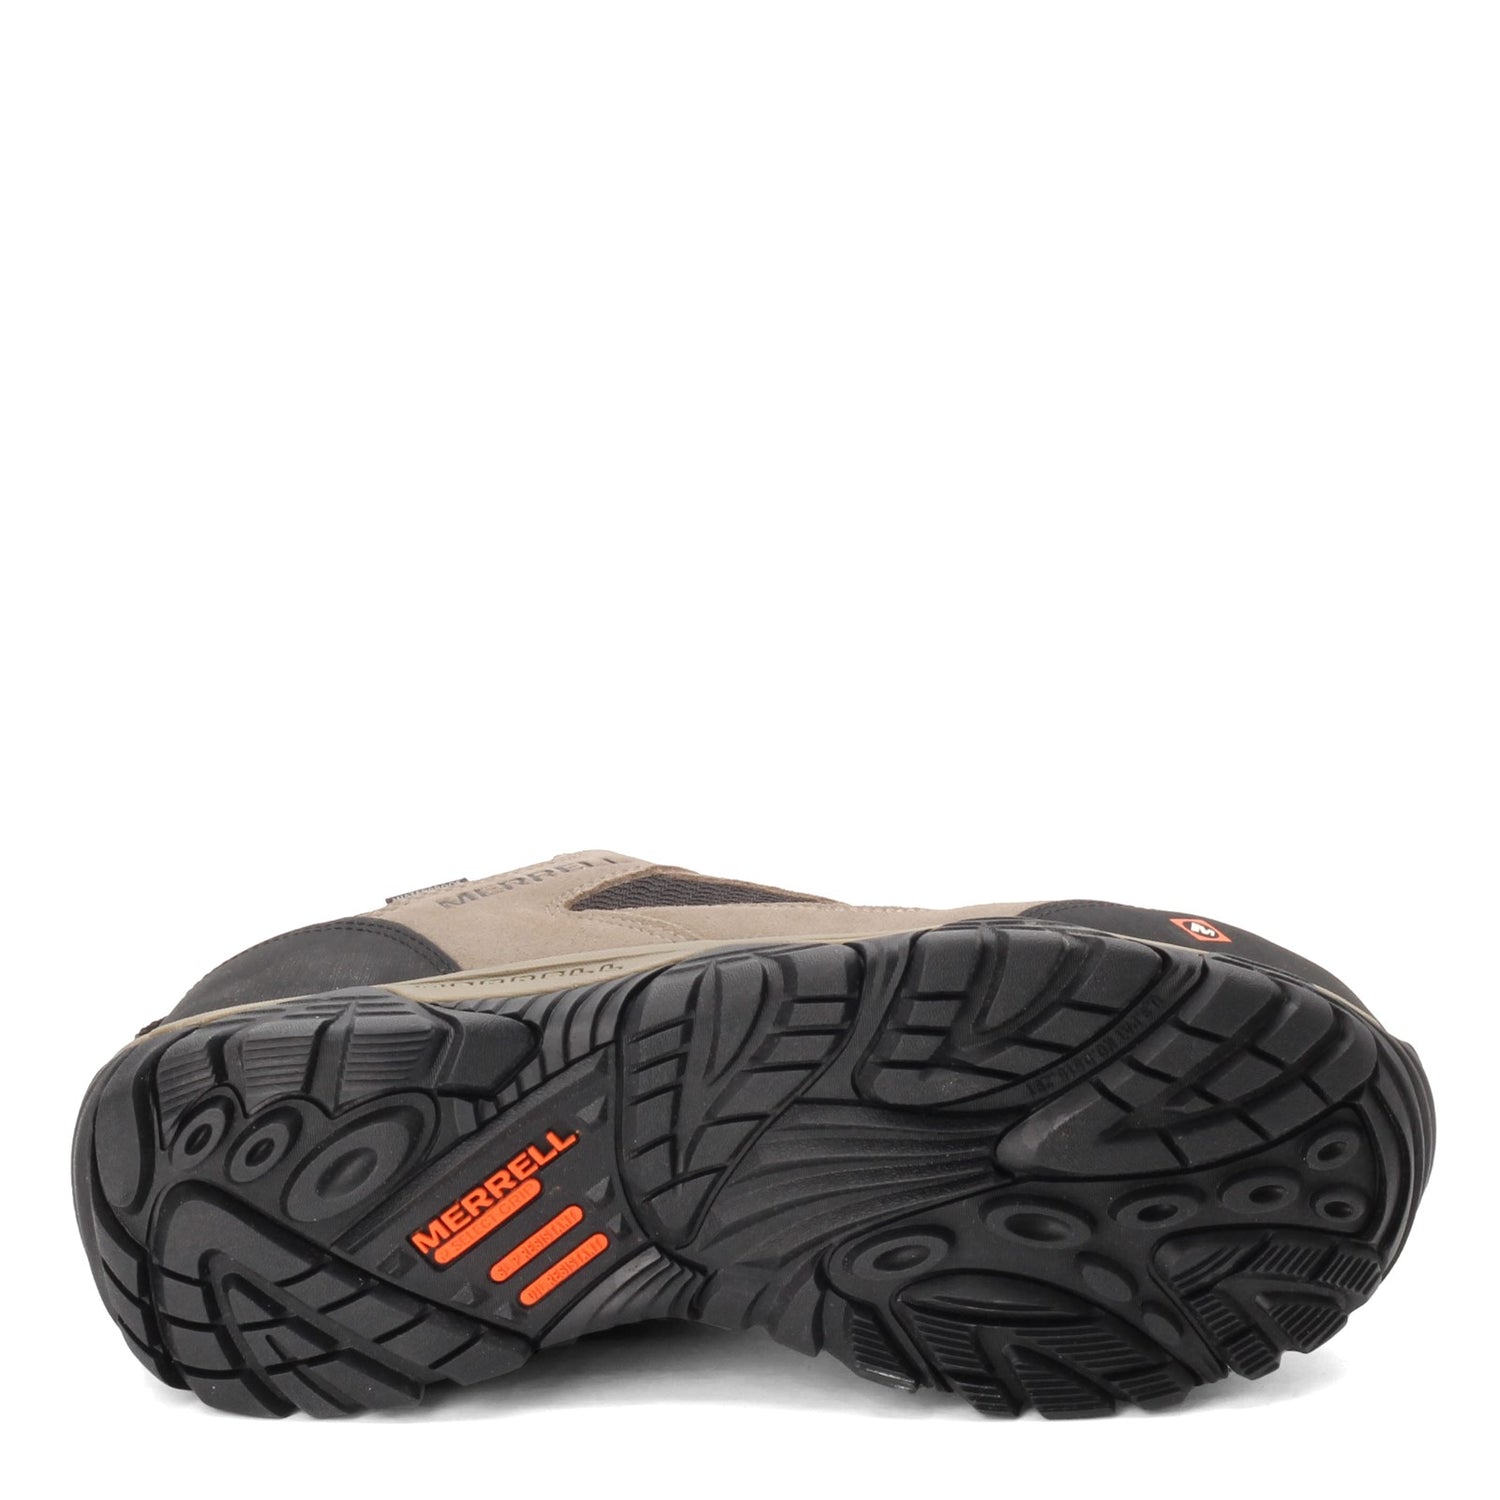 Peltz Shoes  Men's Merrell Moab Onset Low Waterproof Comp Toe Work Shoe - Wide Width WALNUT J099505W